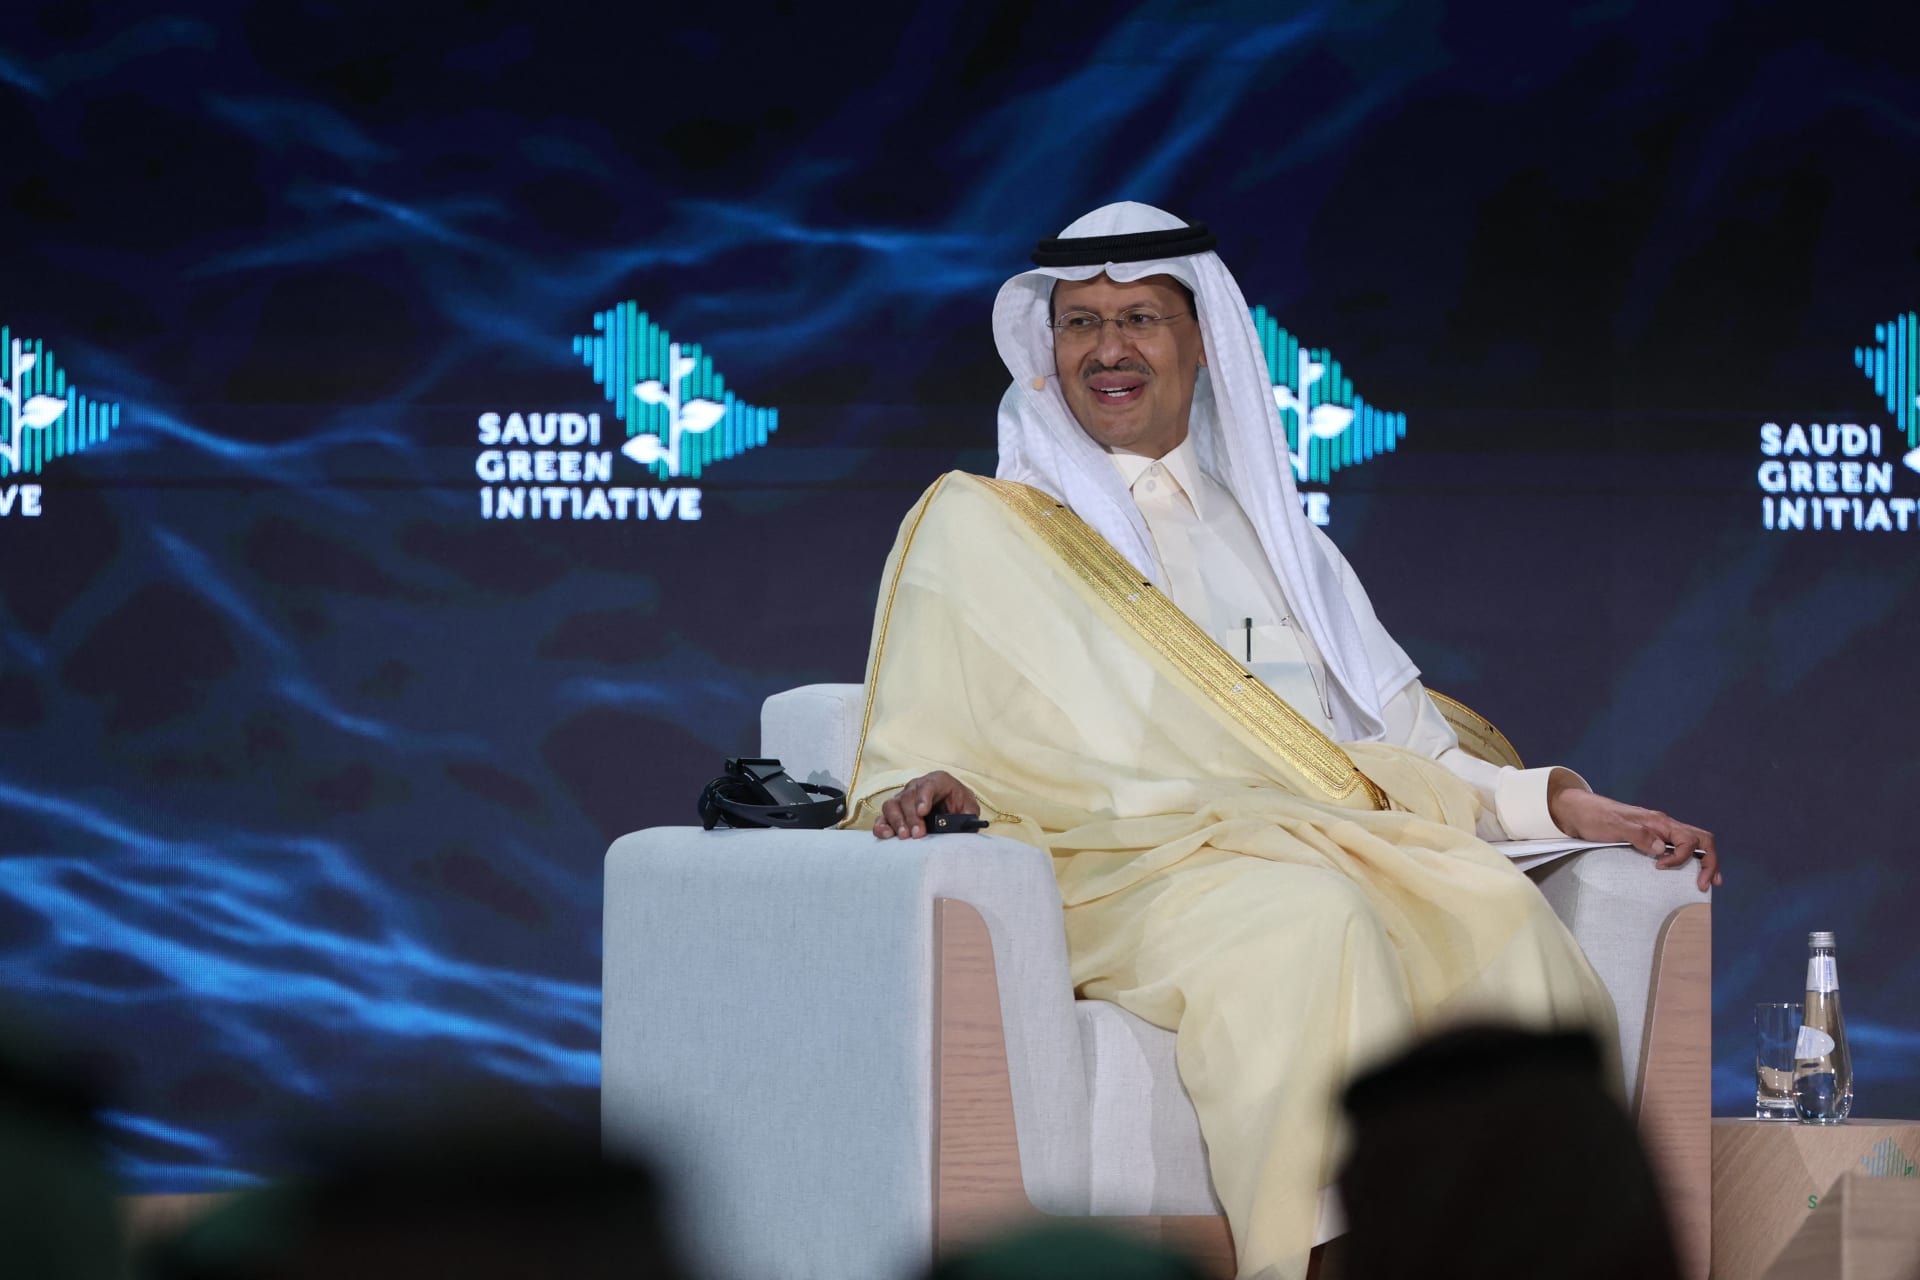 وزير الطاقة السعودي الأمير عبد العزيز بن سلمان في مؤتمر مبادرة السعودية الخضراء في الرياض 